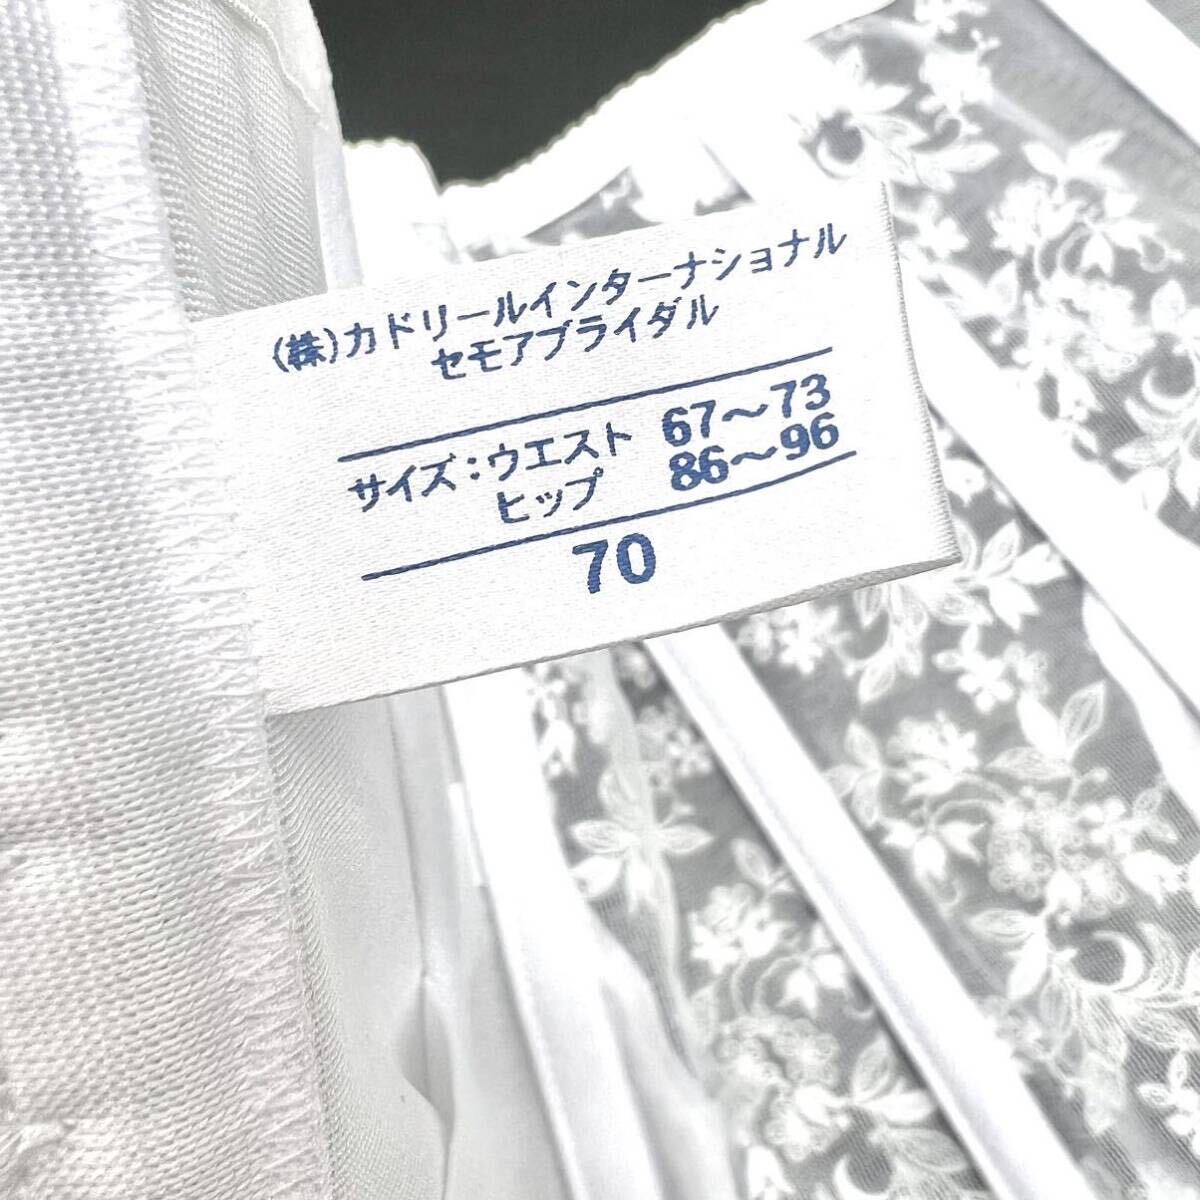 C*EST MOIse moa кусачки талия 70 свадебное белье свадебное белье свадьба нижнее белье платье корректировка белый тип белый сделано в Японии 